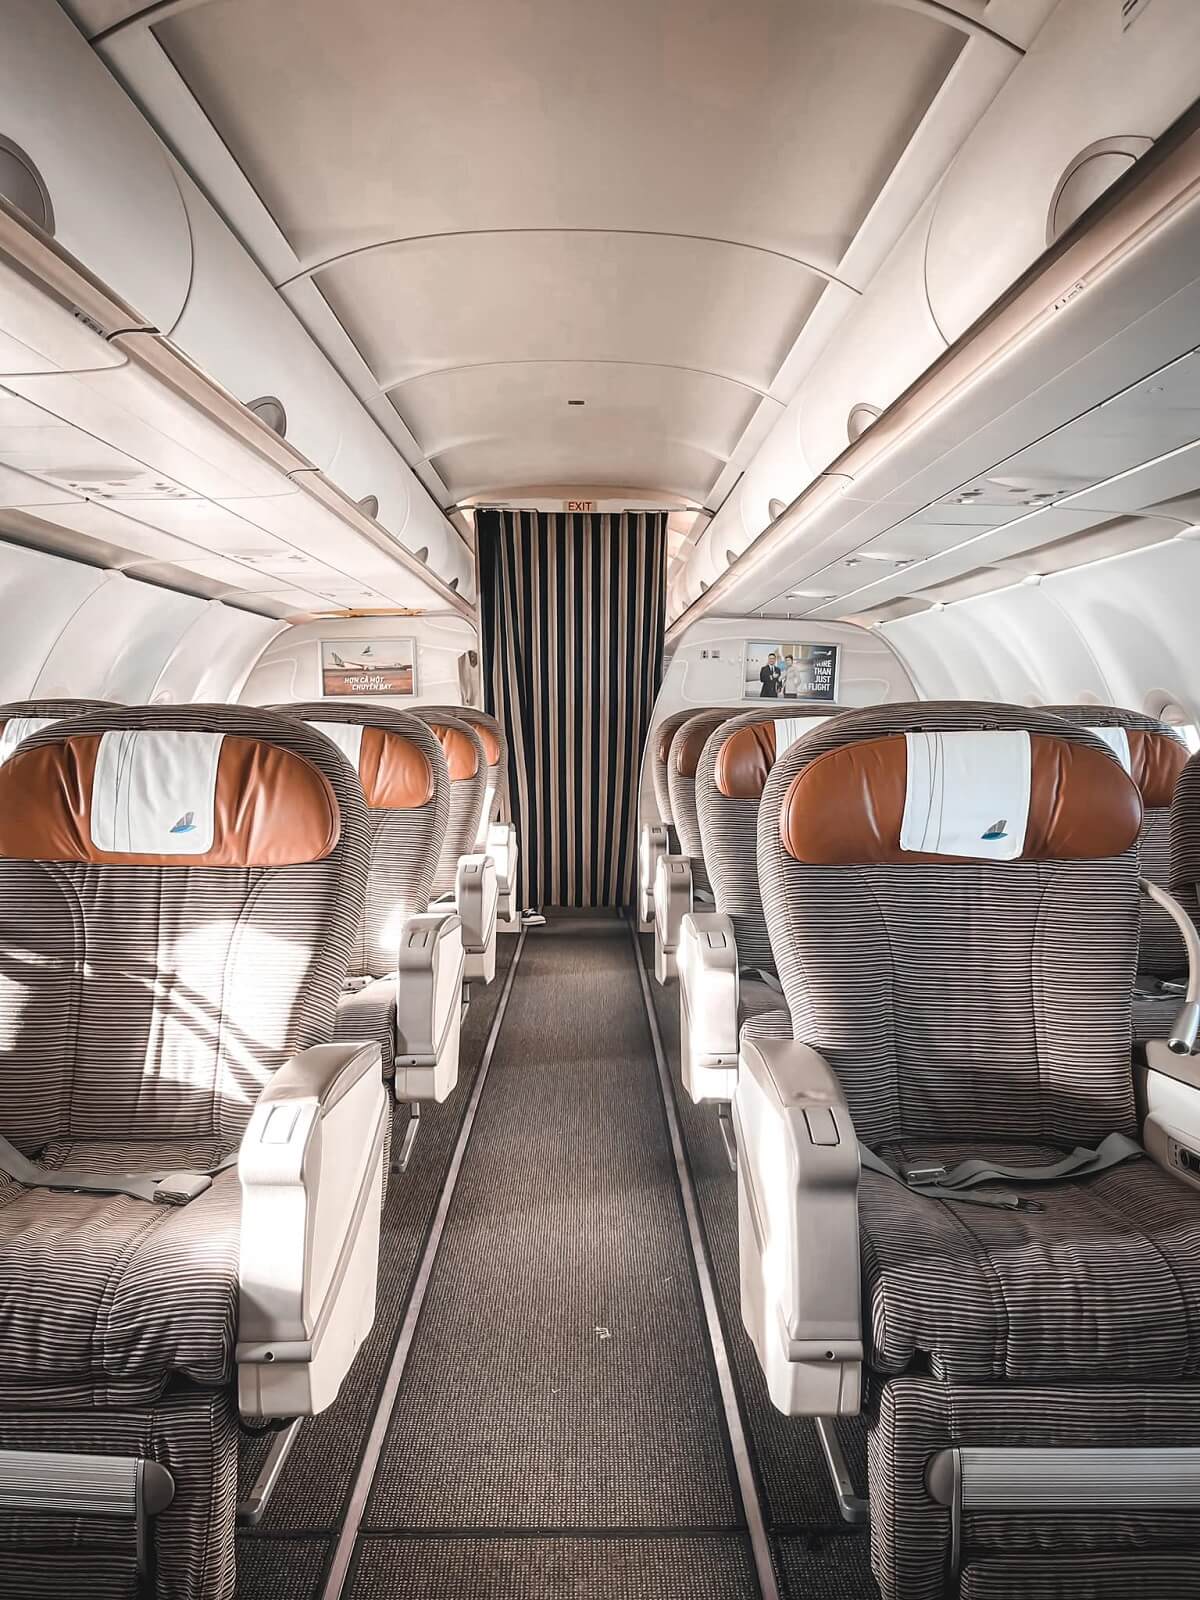 Bamboo Airways cung cấp đa dạng vị trí ghế, giúp khách hàng dễ dàng chọn lựa chỗ ngồi thoải mái.